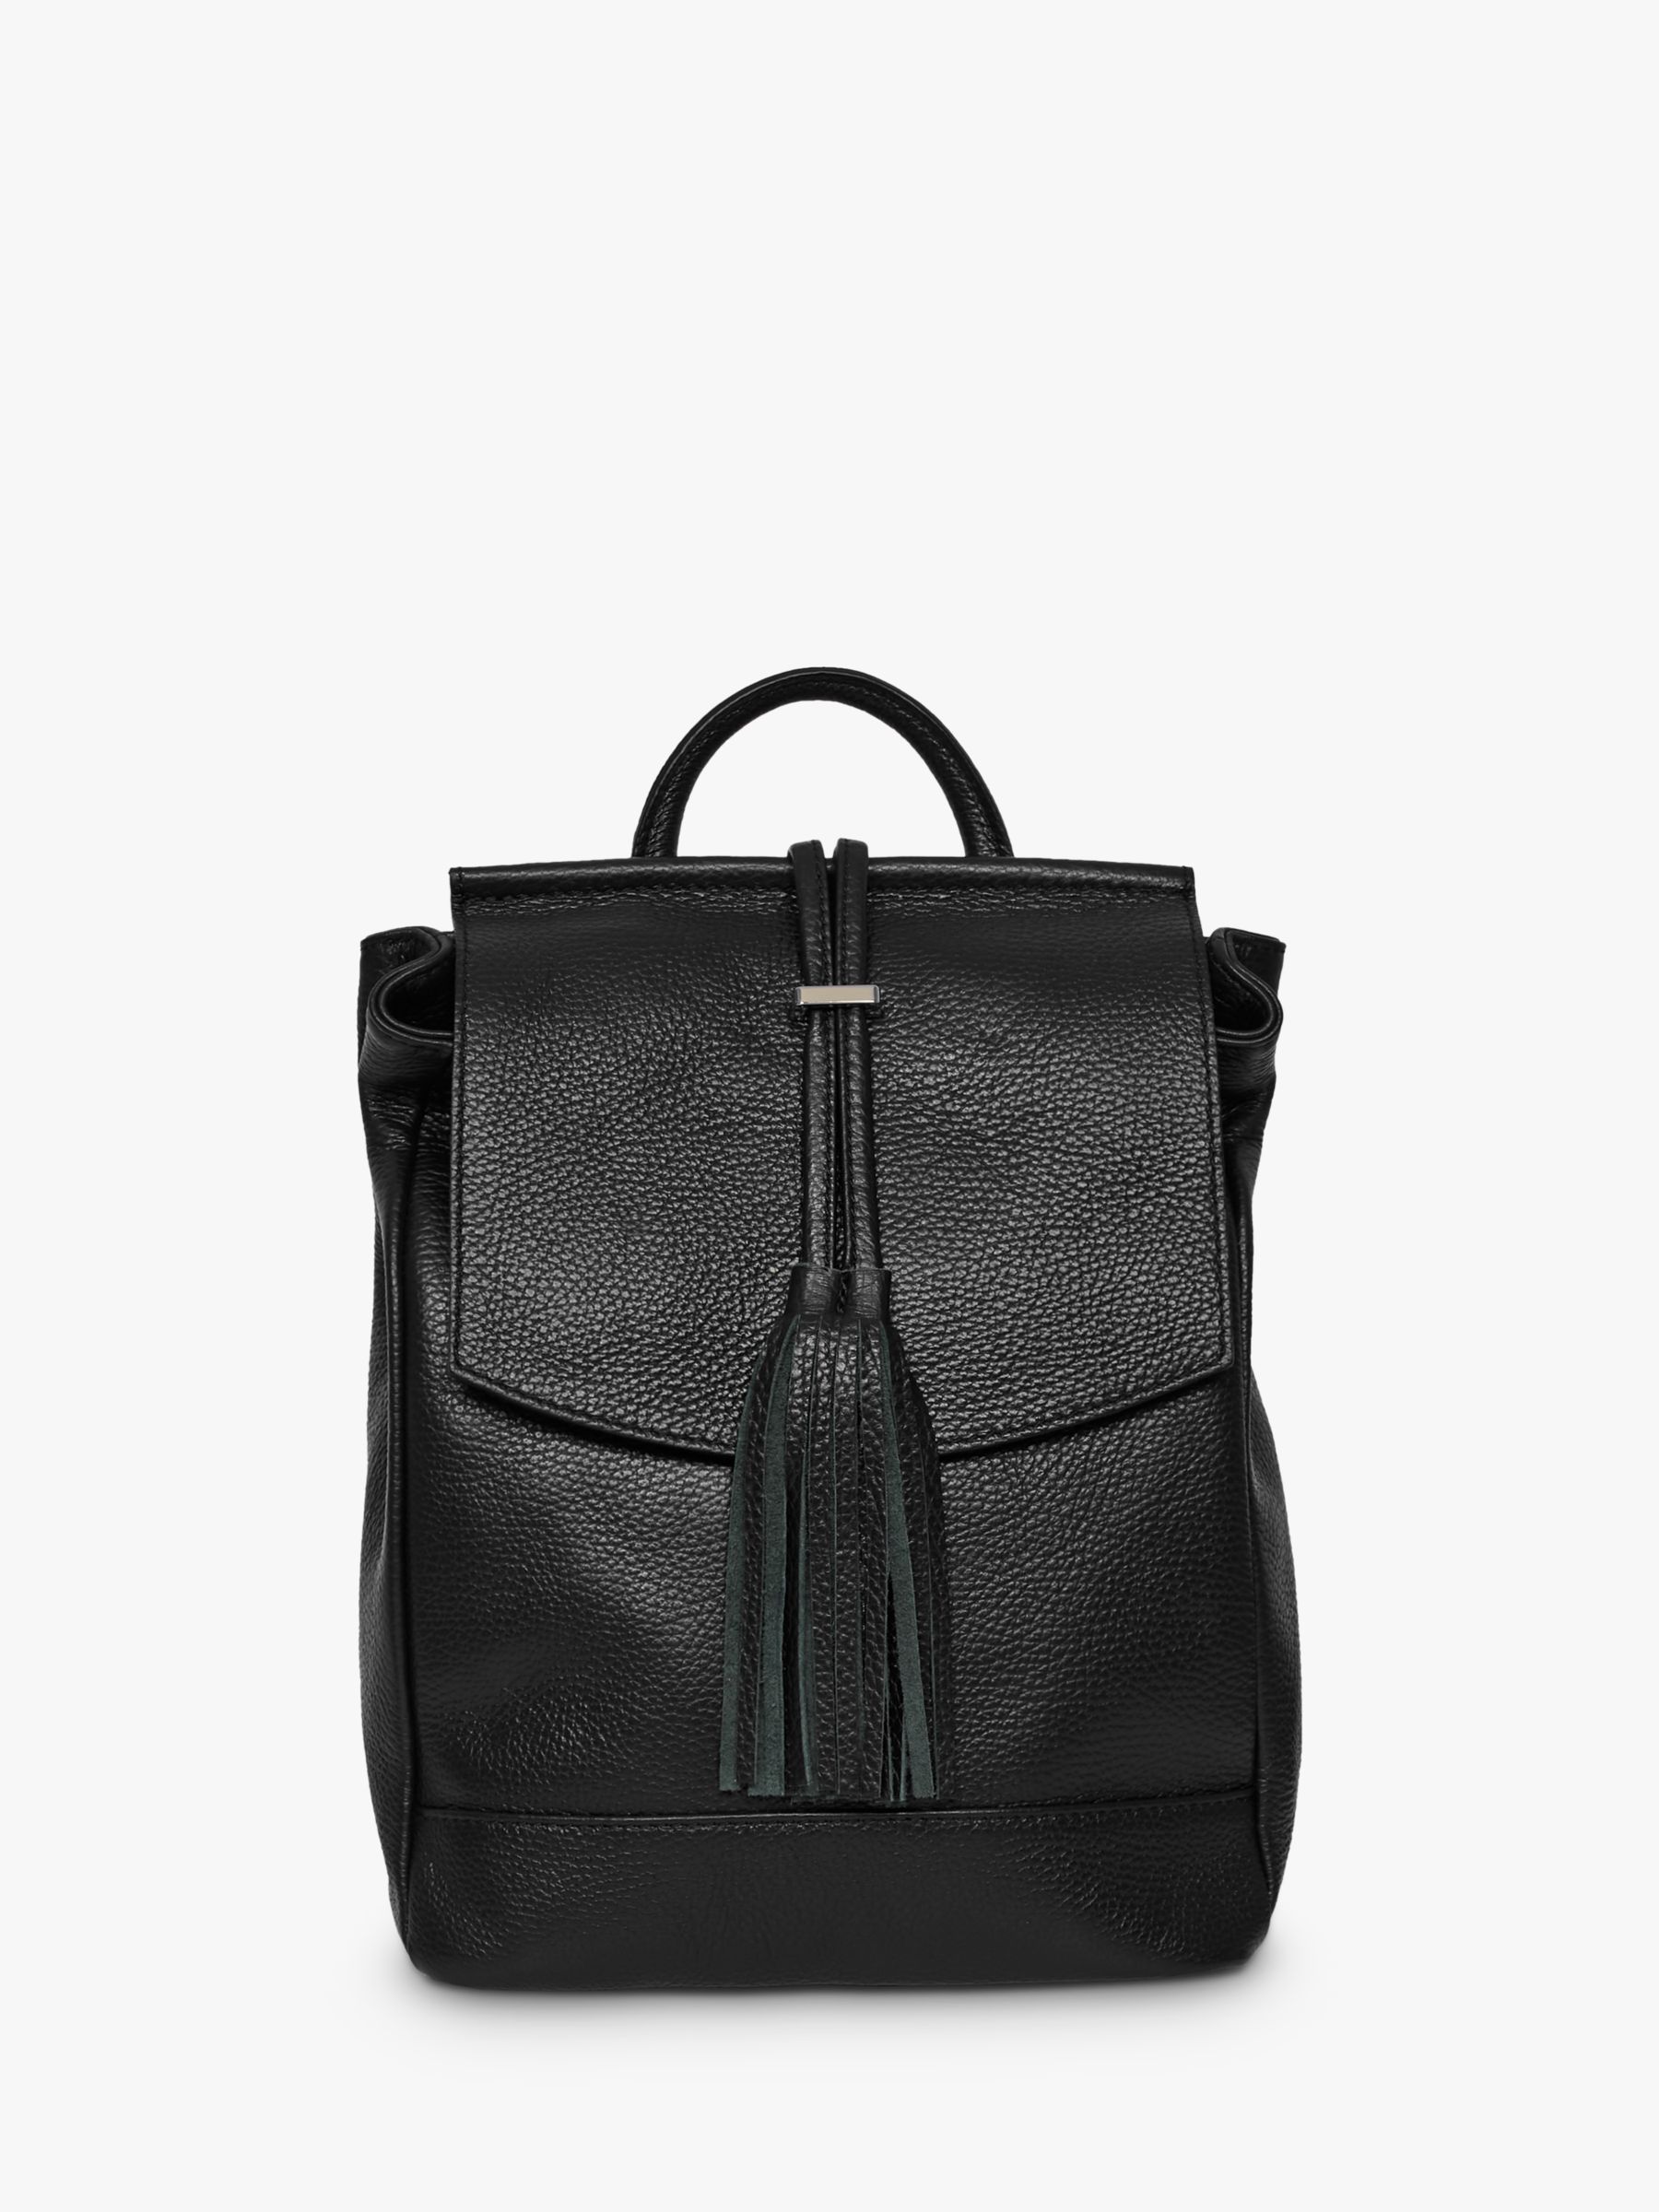 Celtic & Co. Leather Tassel Backpack, Black at John Lewis & Partners